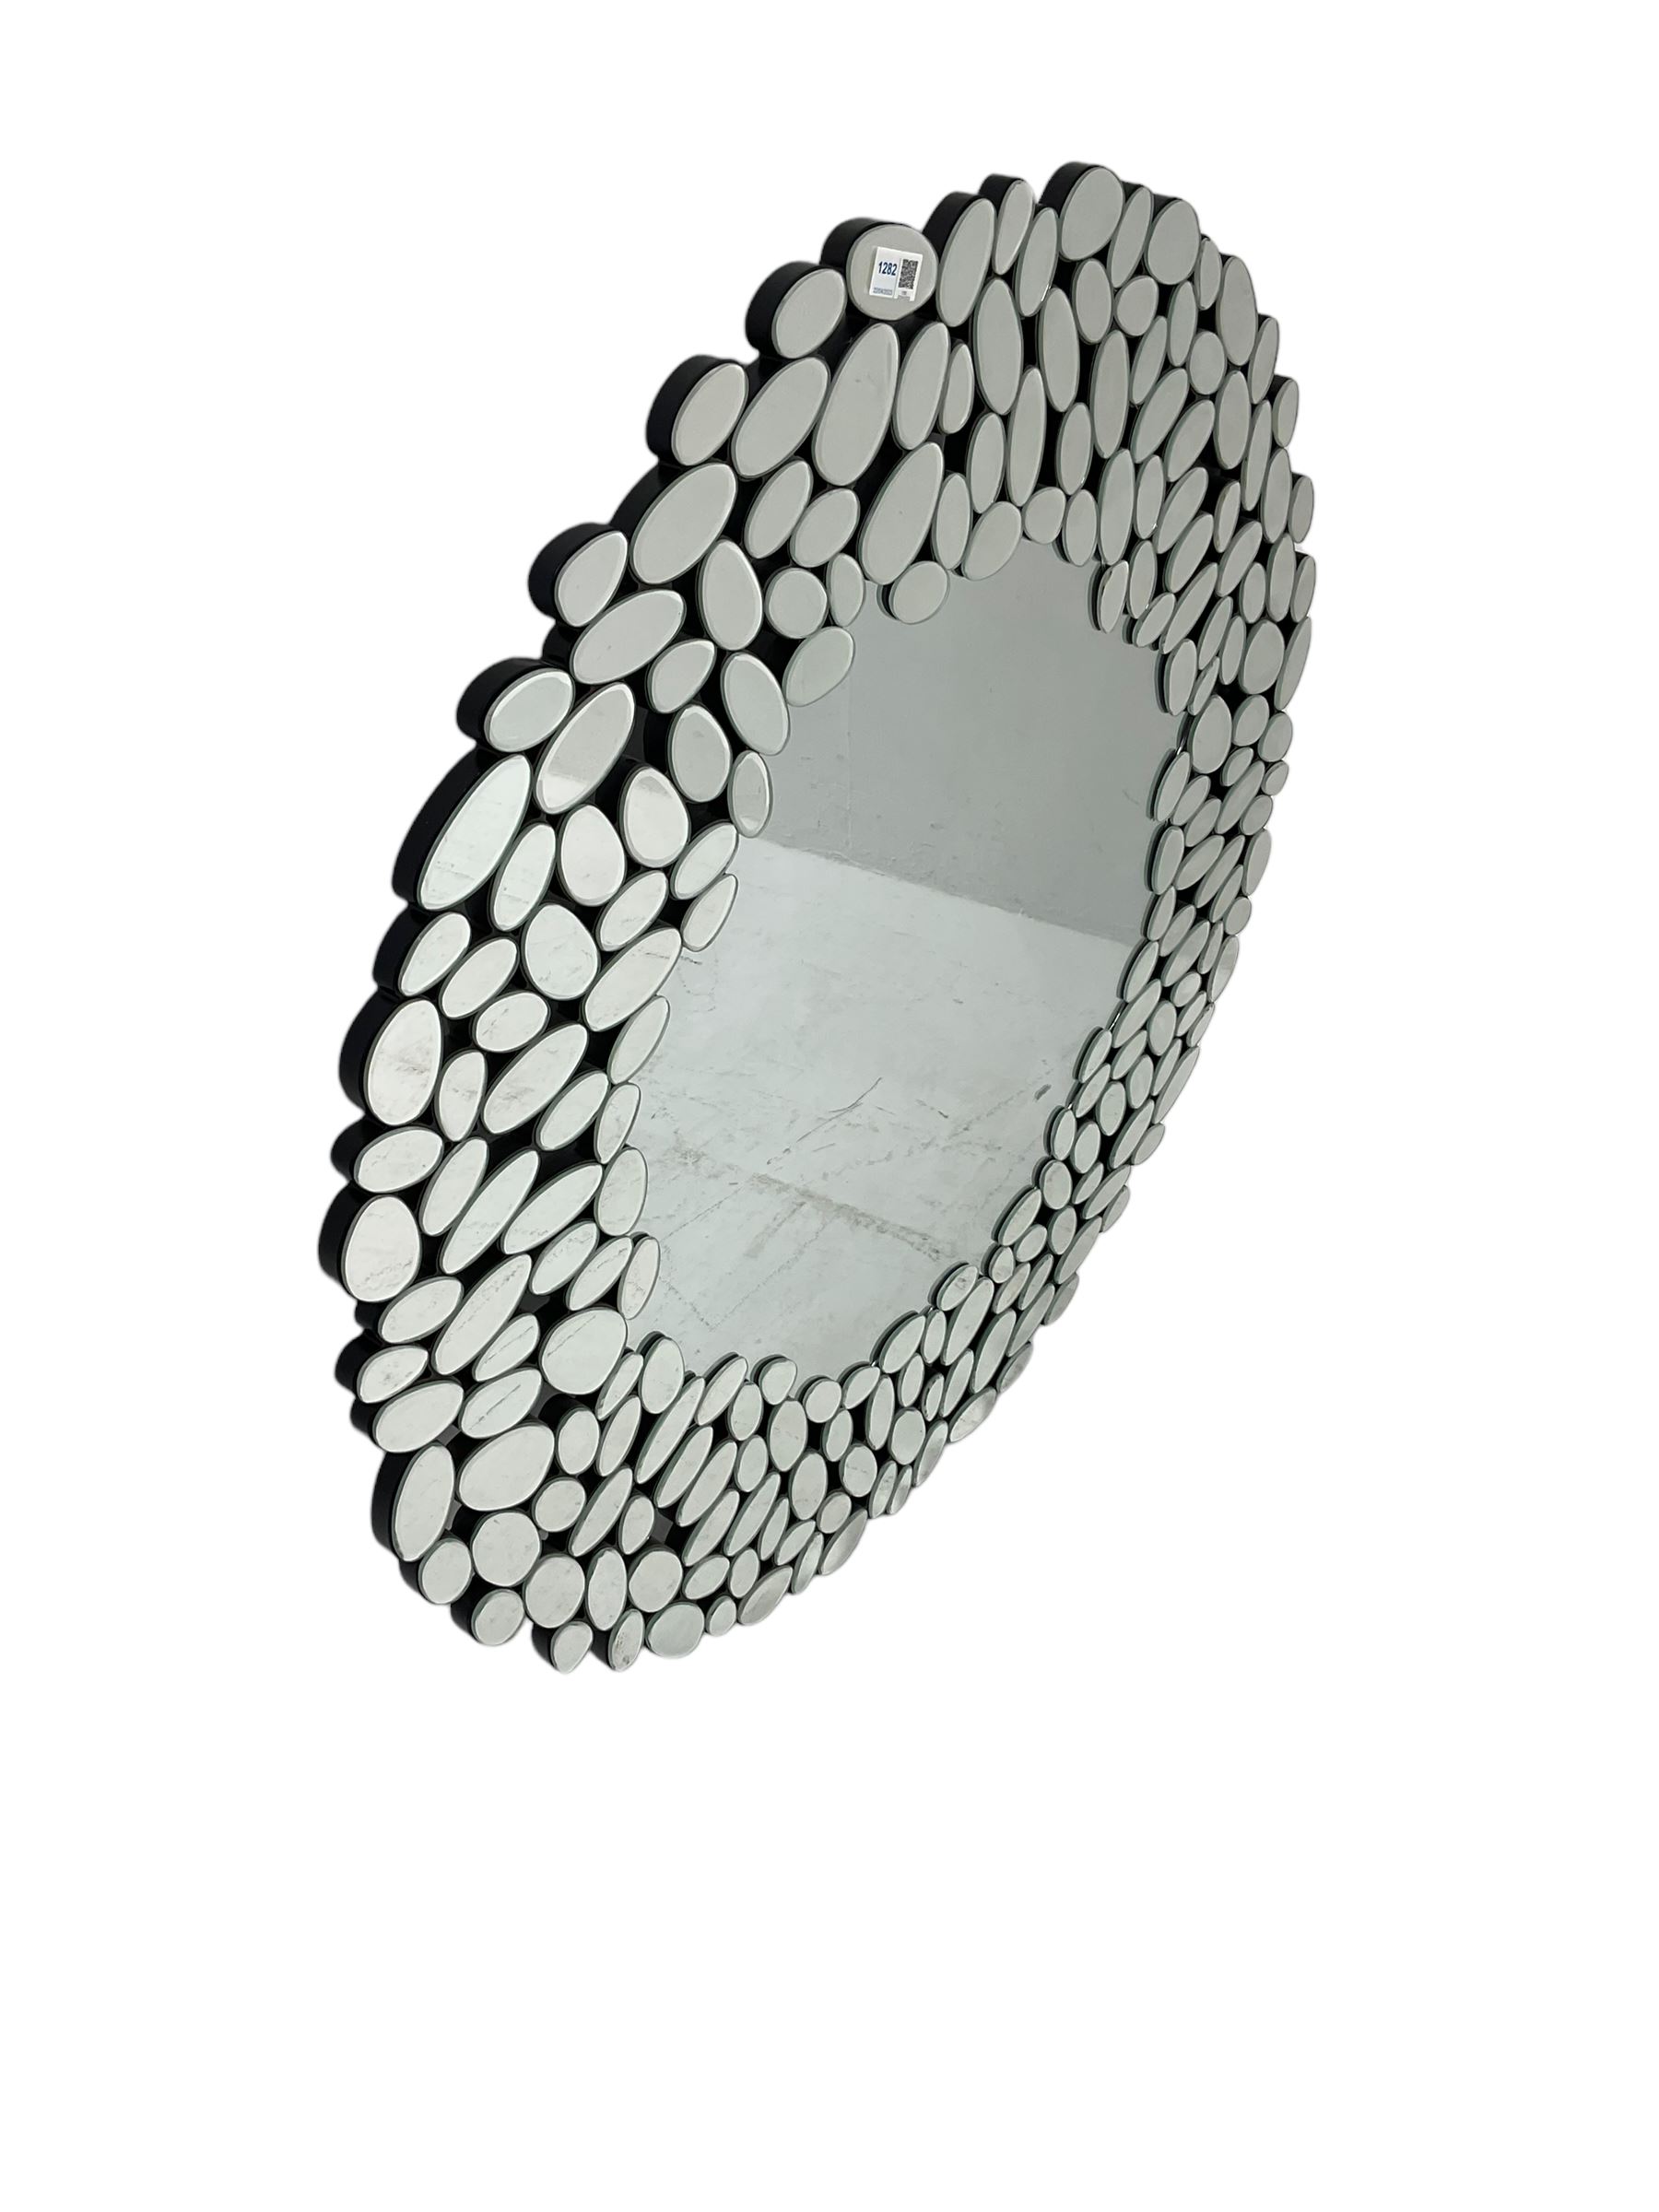 Contemporary sunburst design mirror - Image 3 of 4